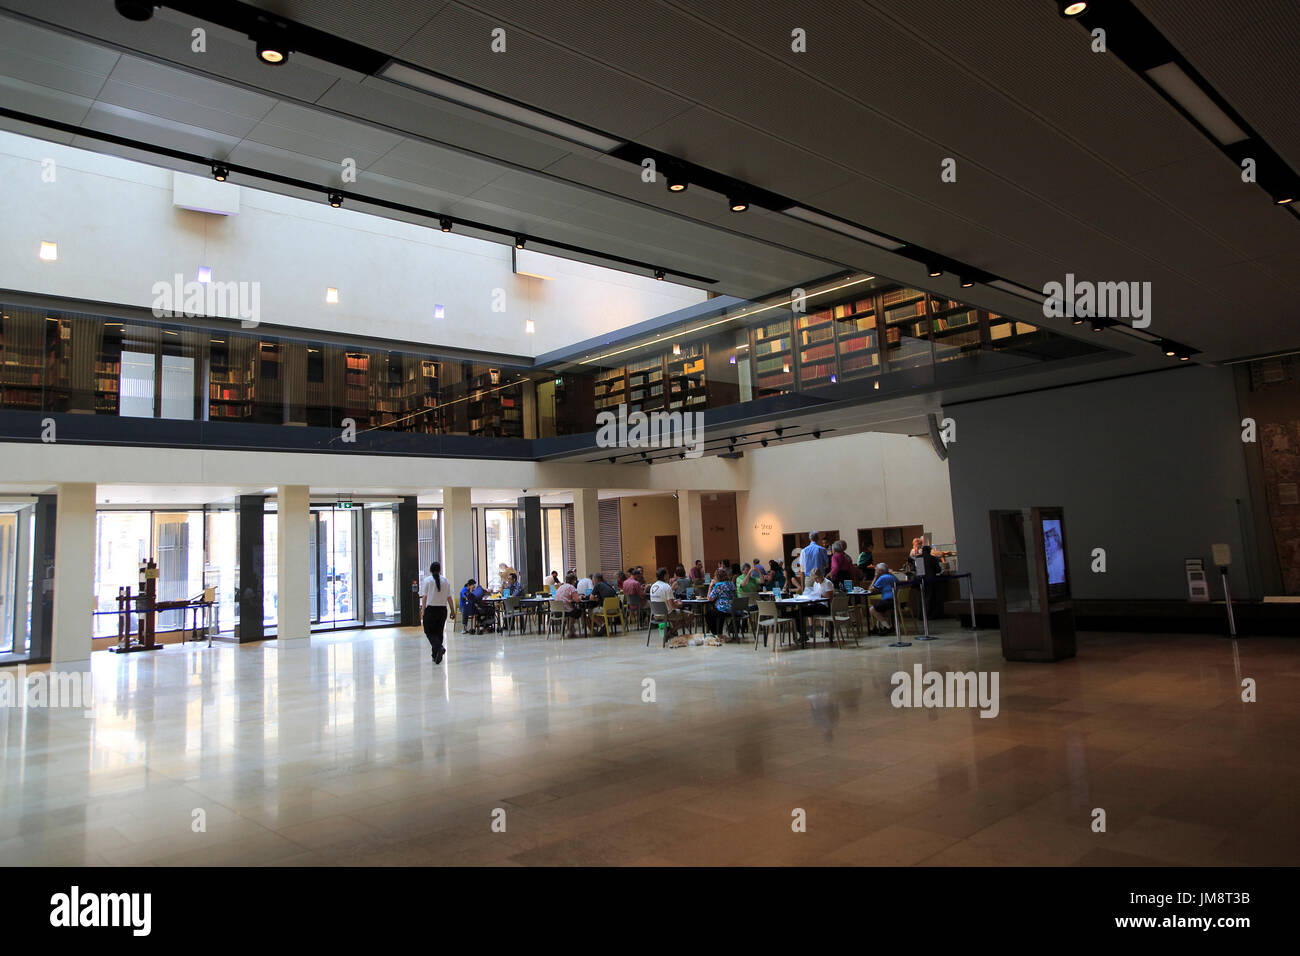 Nouvelles bibliothèques Bodleian Library Weston rénové intérieur, de l'Université d'Oxford, England, UK Banque D'Images